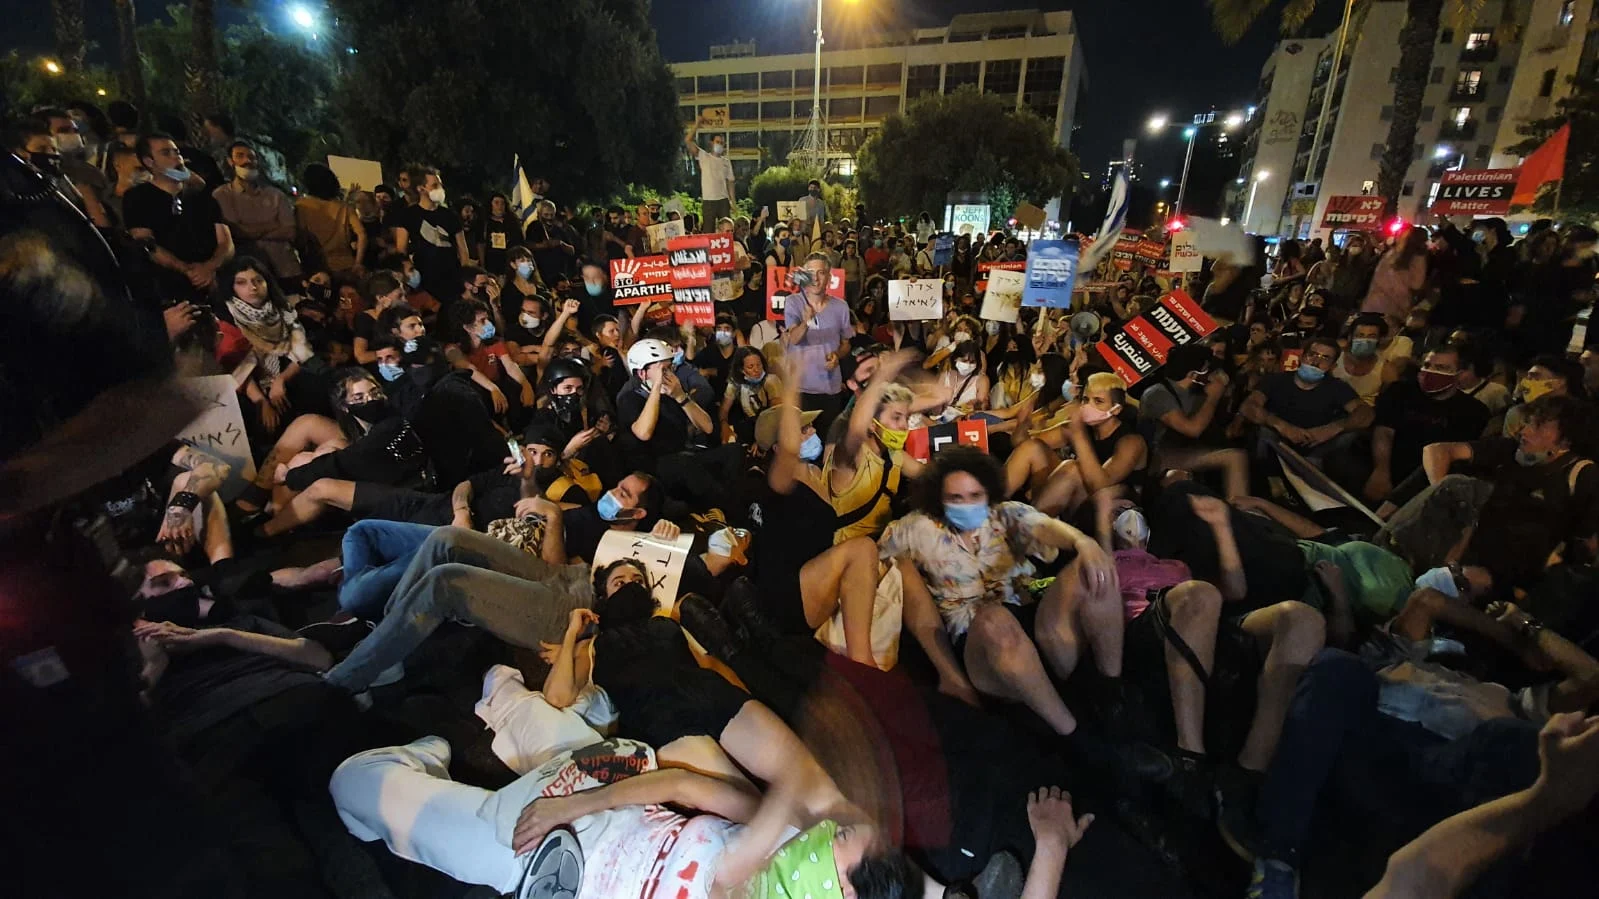 הפגנה בתל אביב נגד הסיפוח